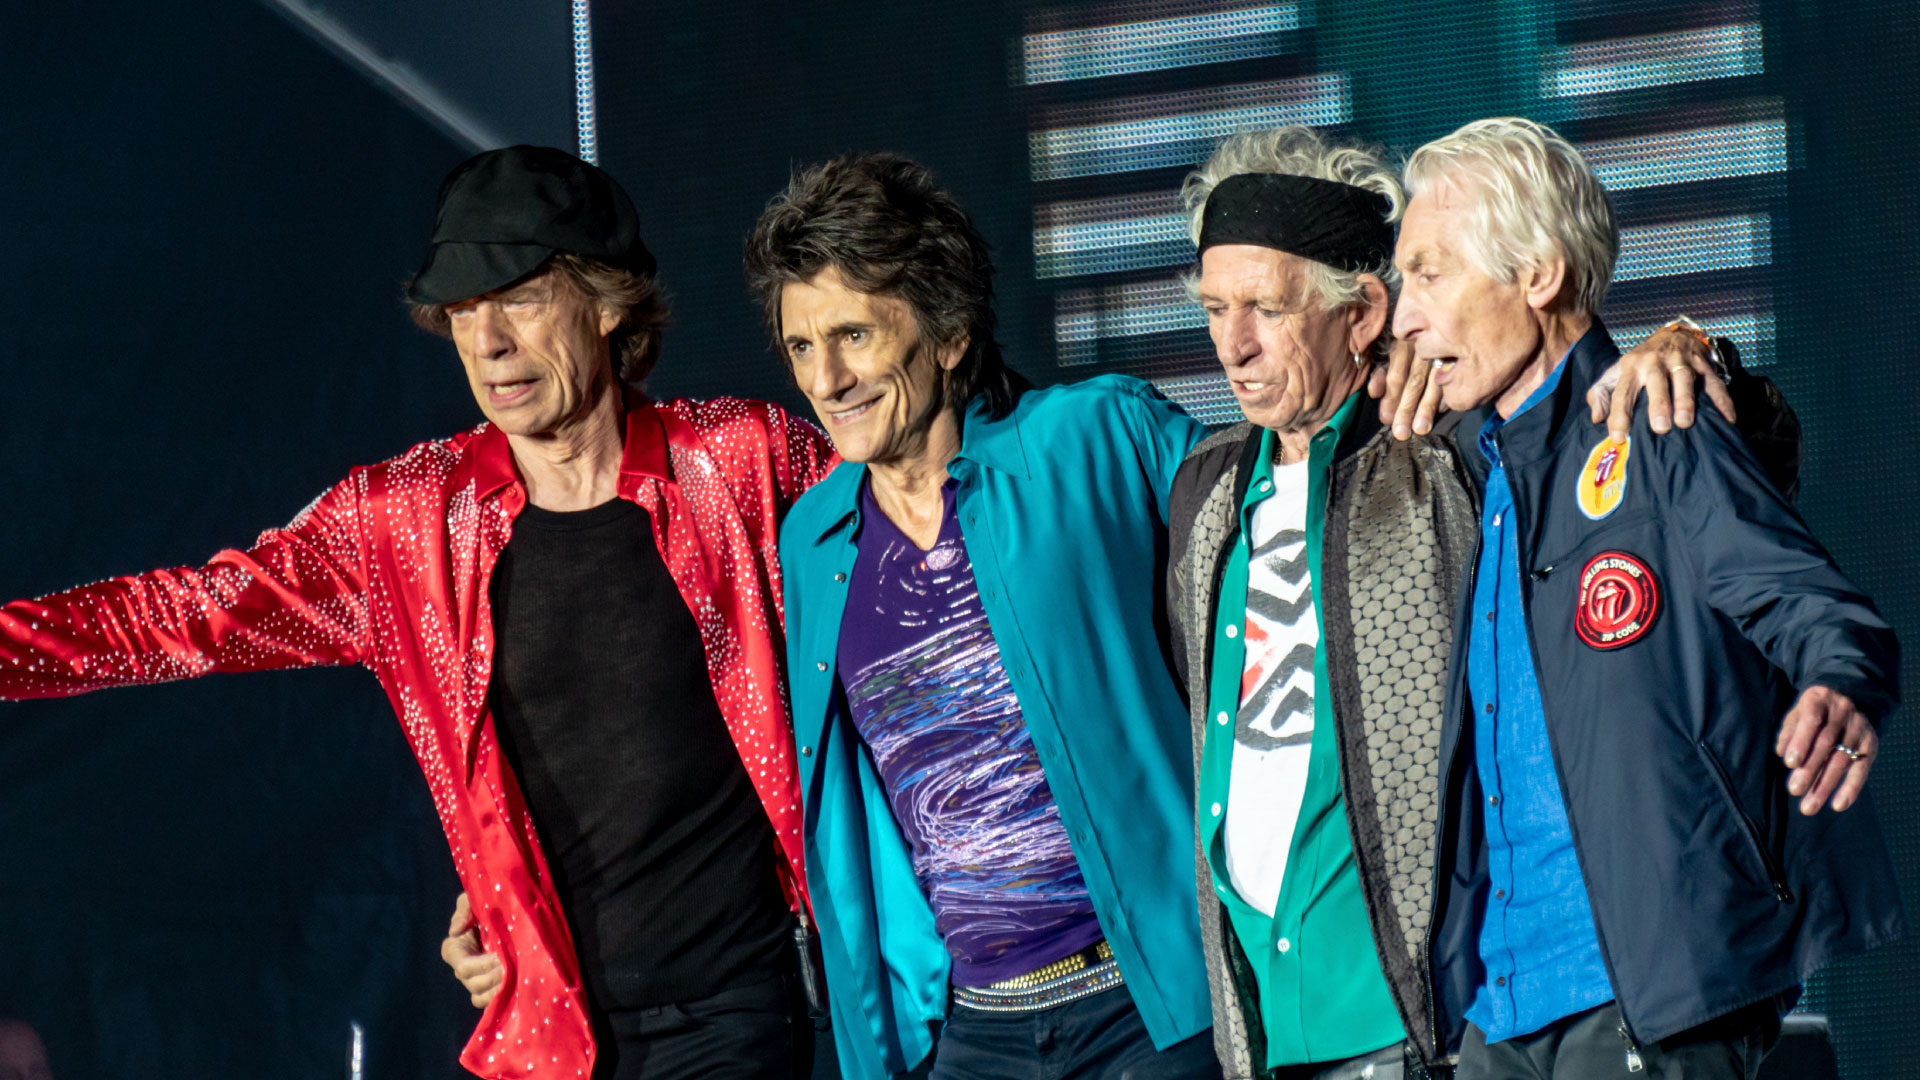 The Rolling Stones presentan teaser de su nueva canción, “Criss Cross”